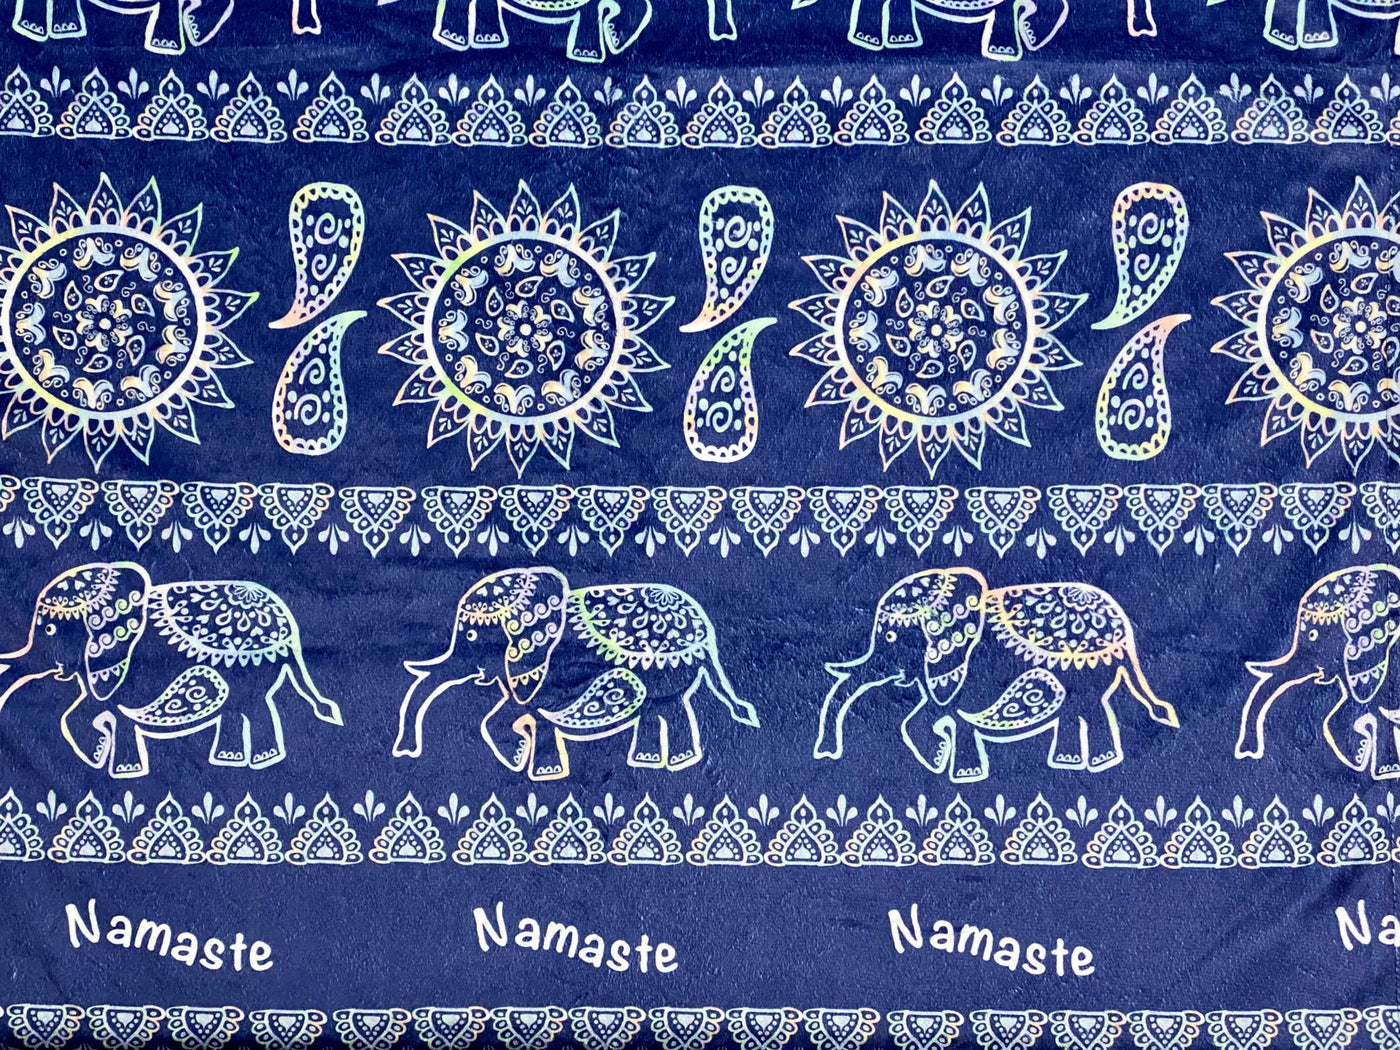 Baby blanket: Tie Die Elephant Namaste